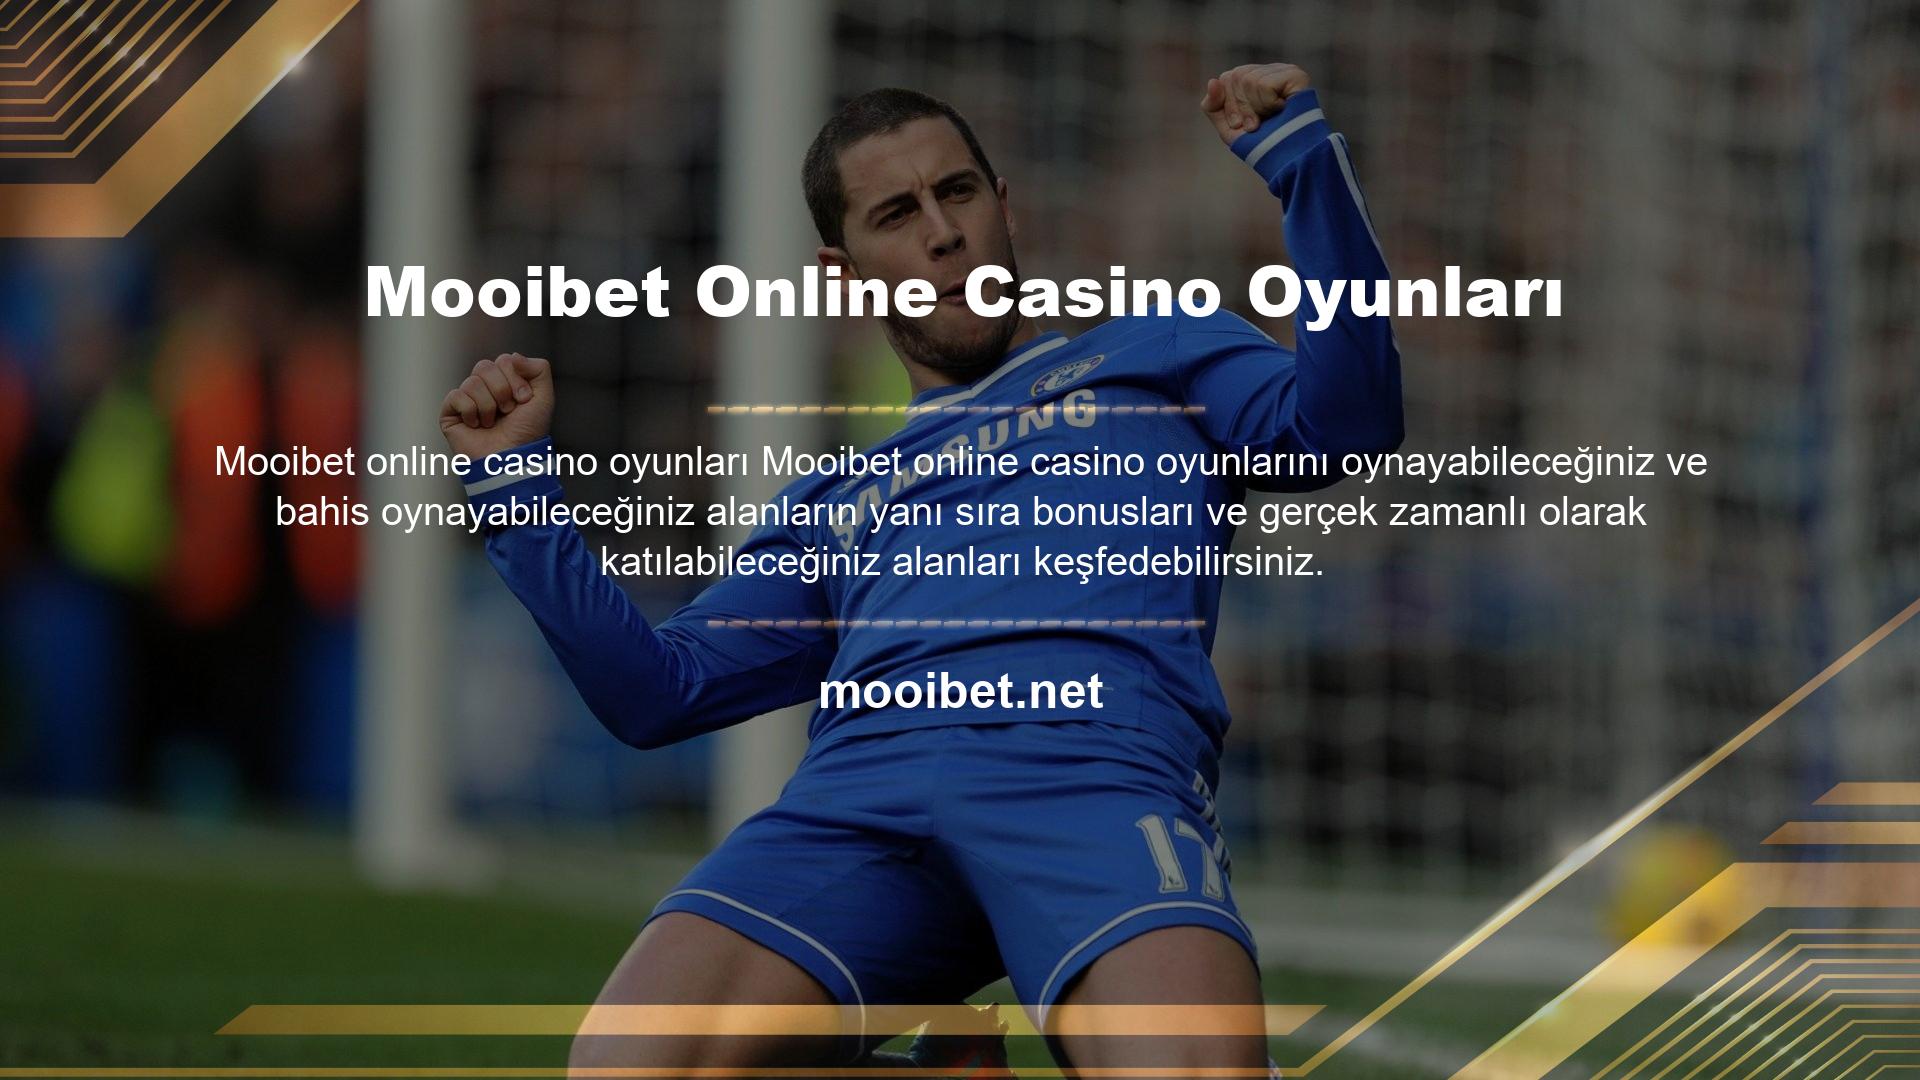 Mooibet Online Casino Oyunları